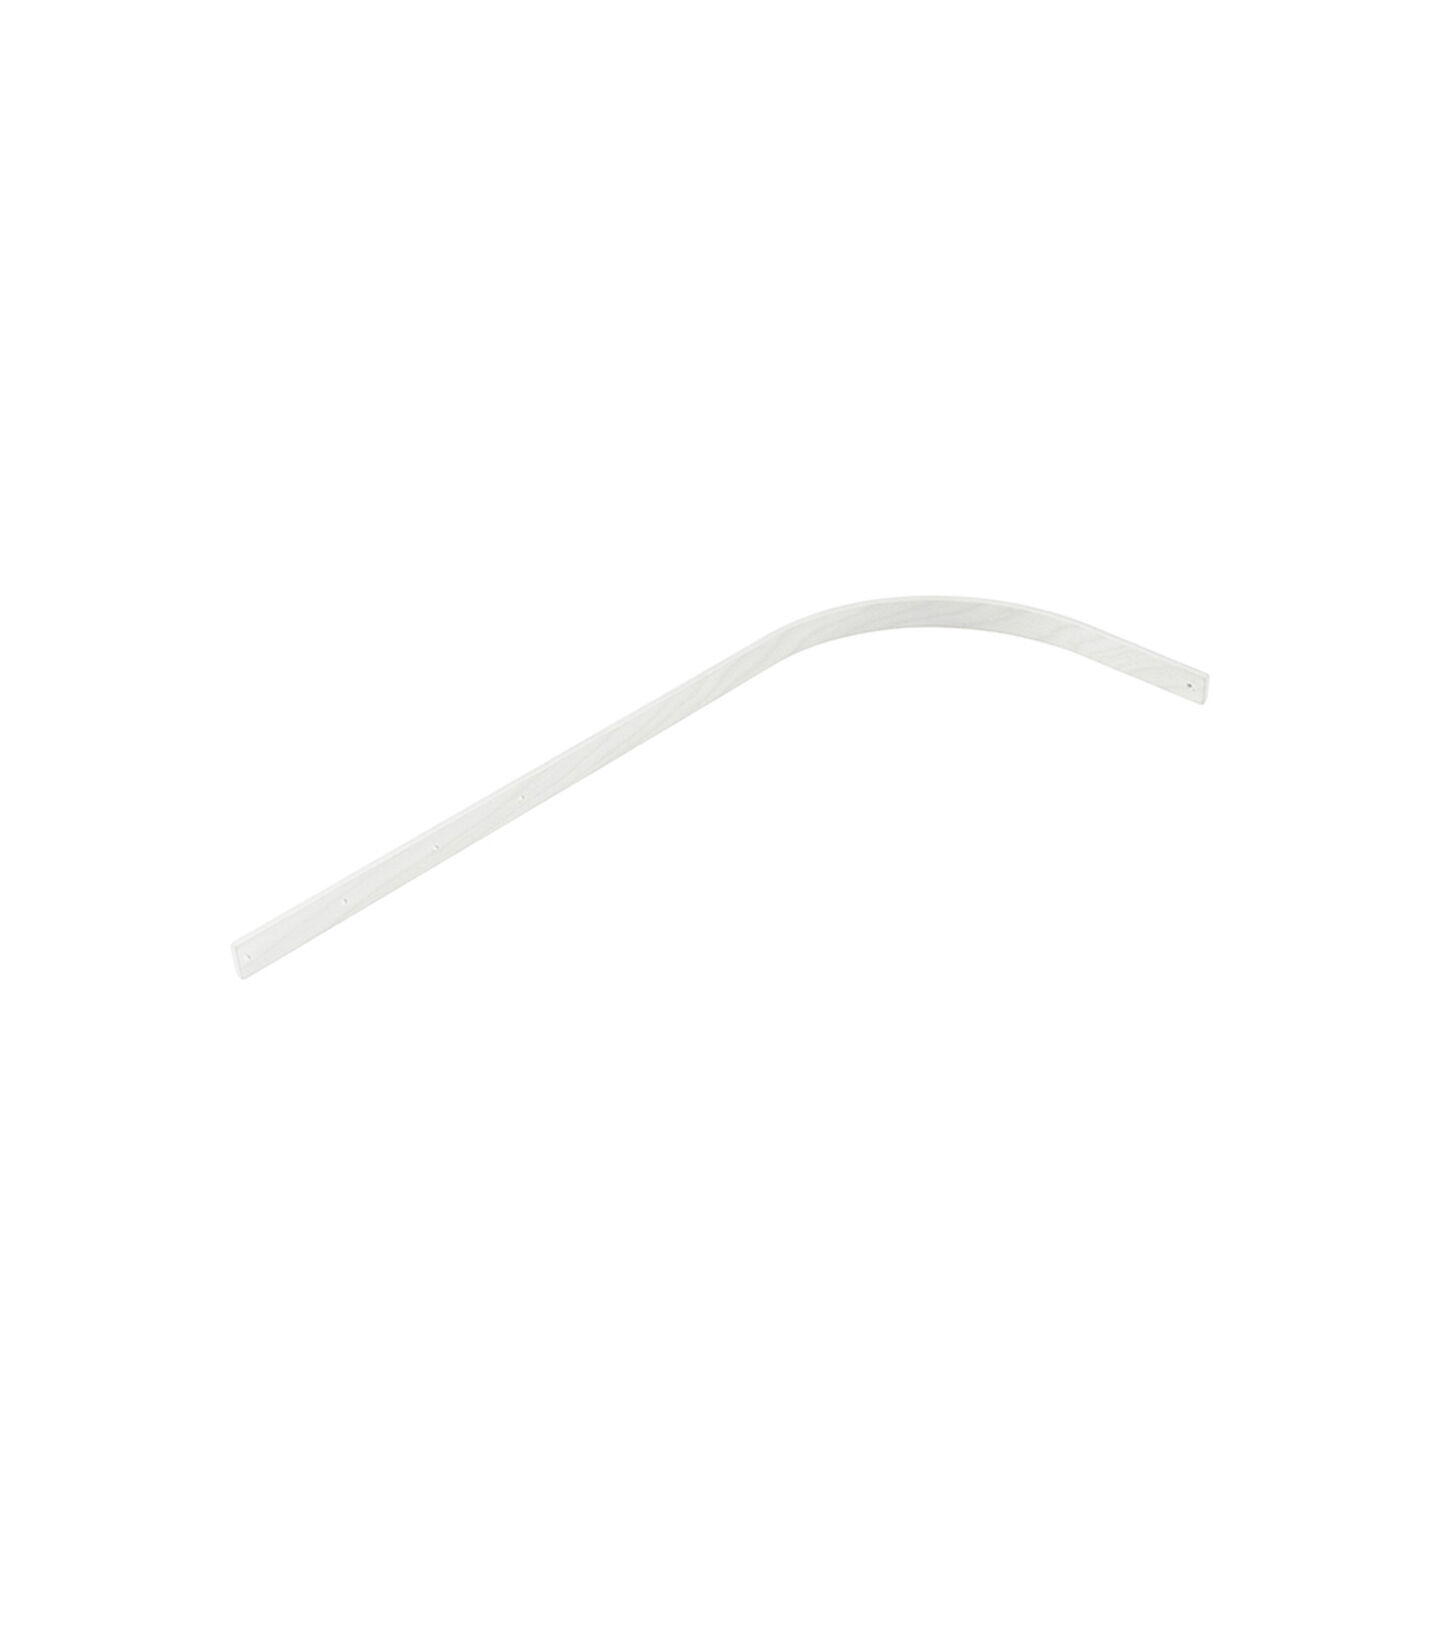 Stokke® Sleepi™ Drape rod White, White, mainview view 1